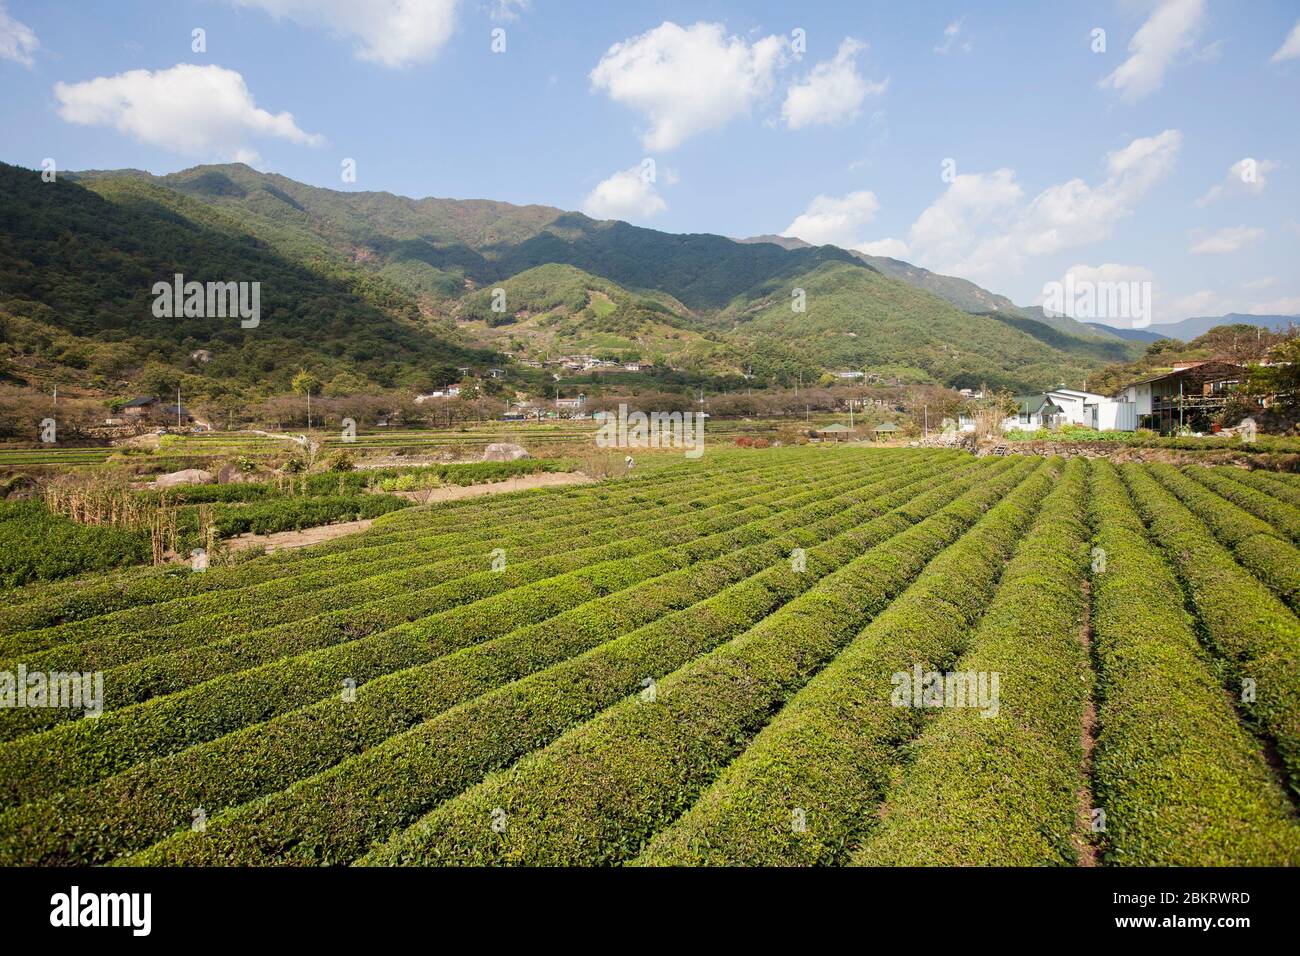 Corée du Sud, province de Gyeongsang Sud, Hadong, plantation de thé, montagnes et village Banque D'Images